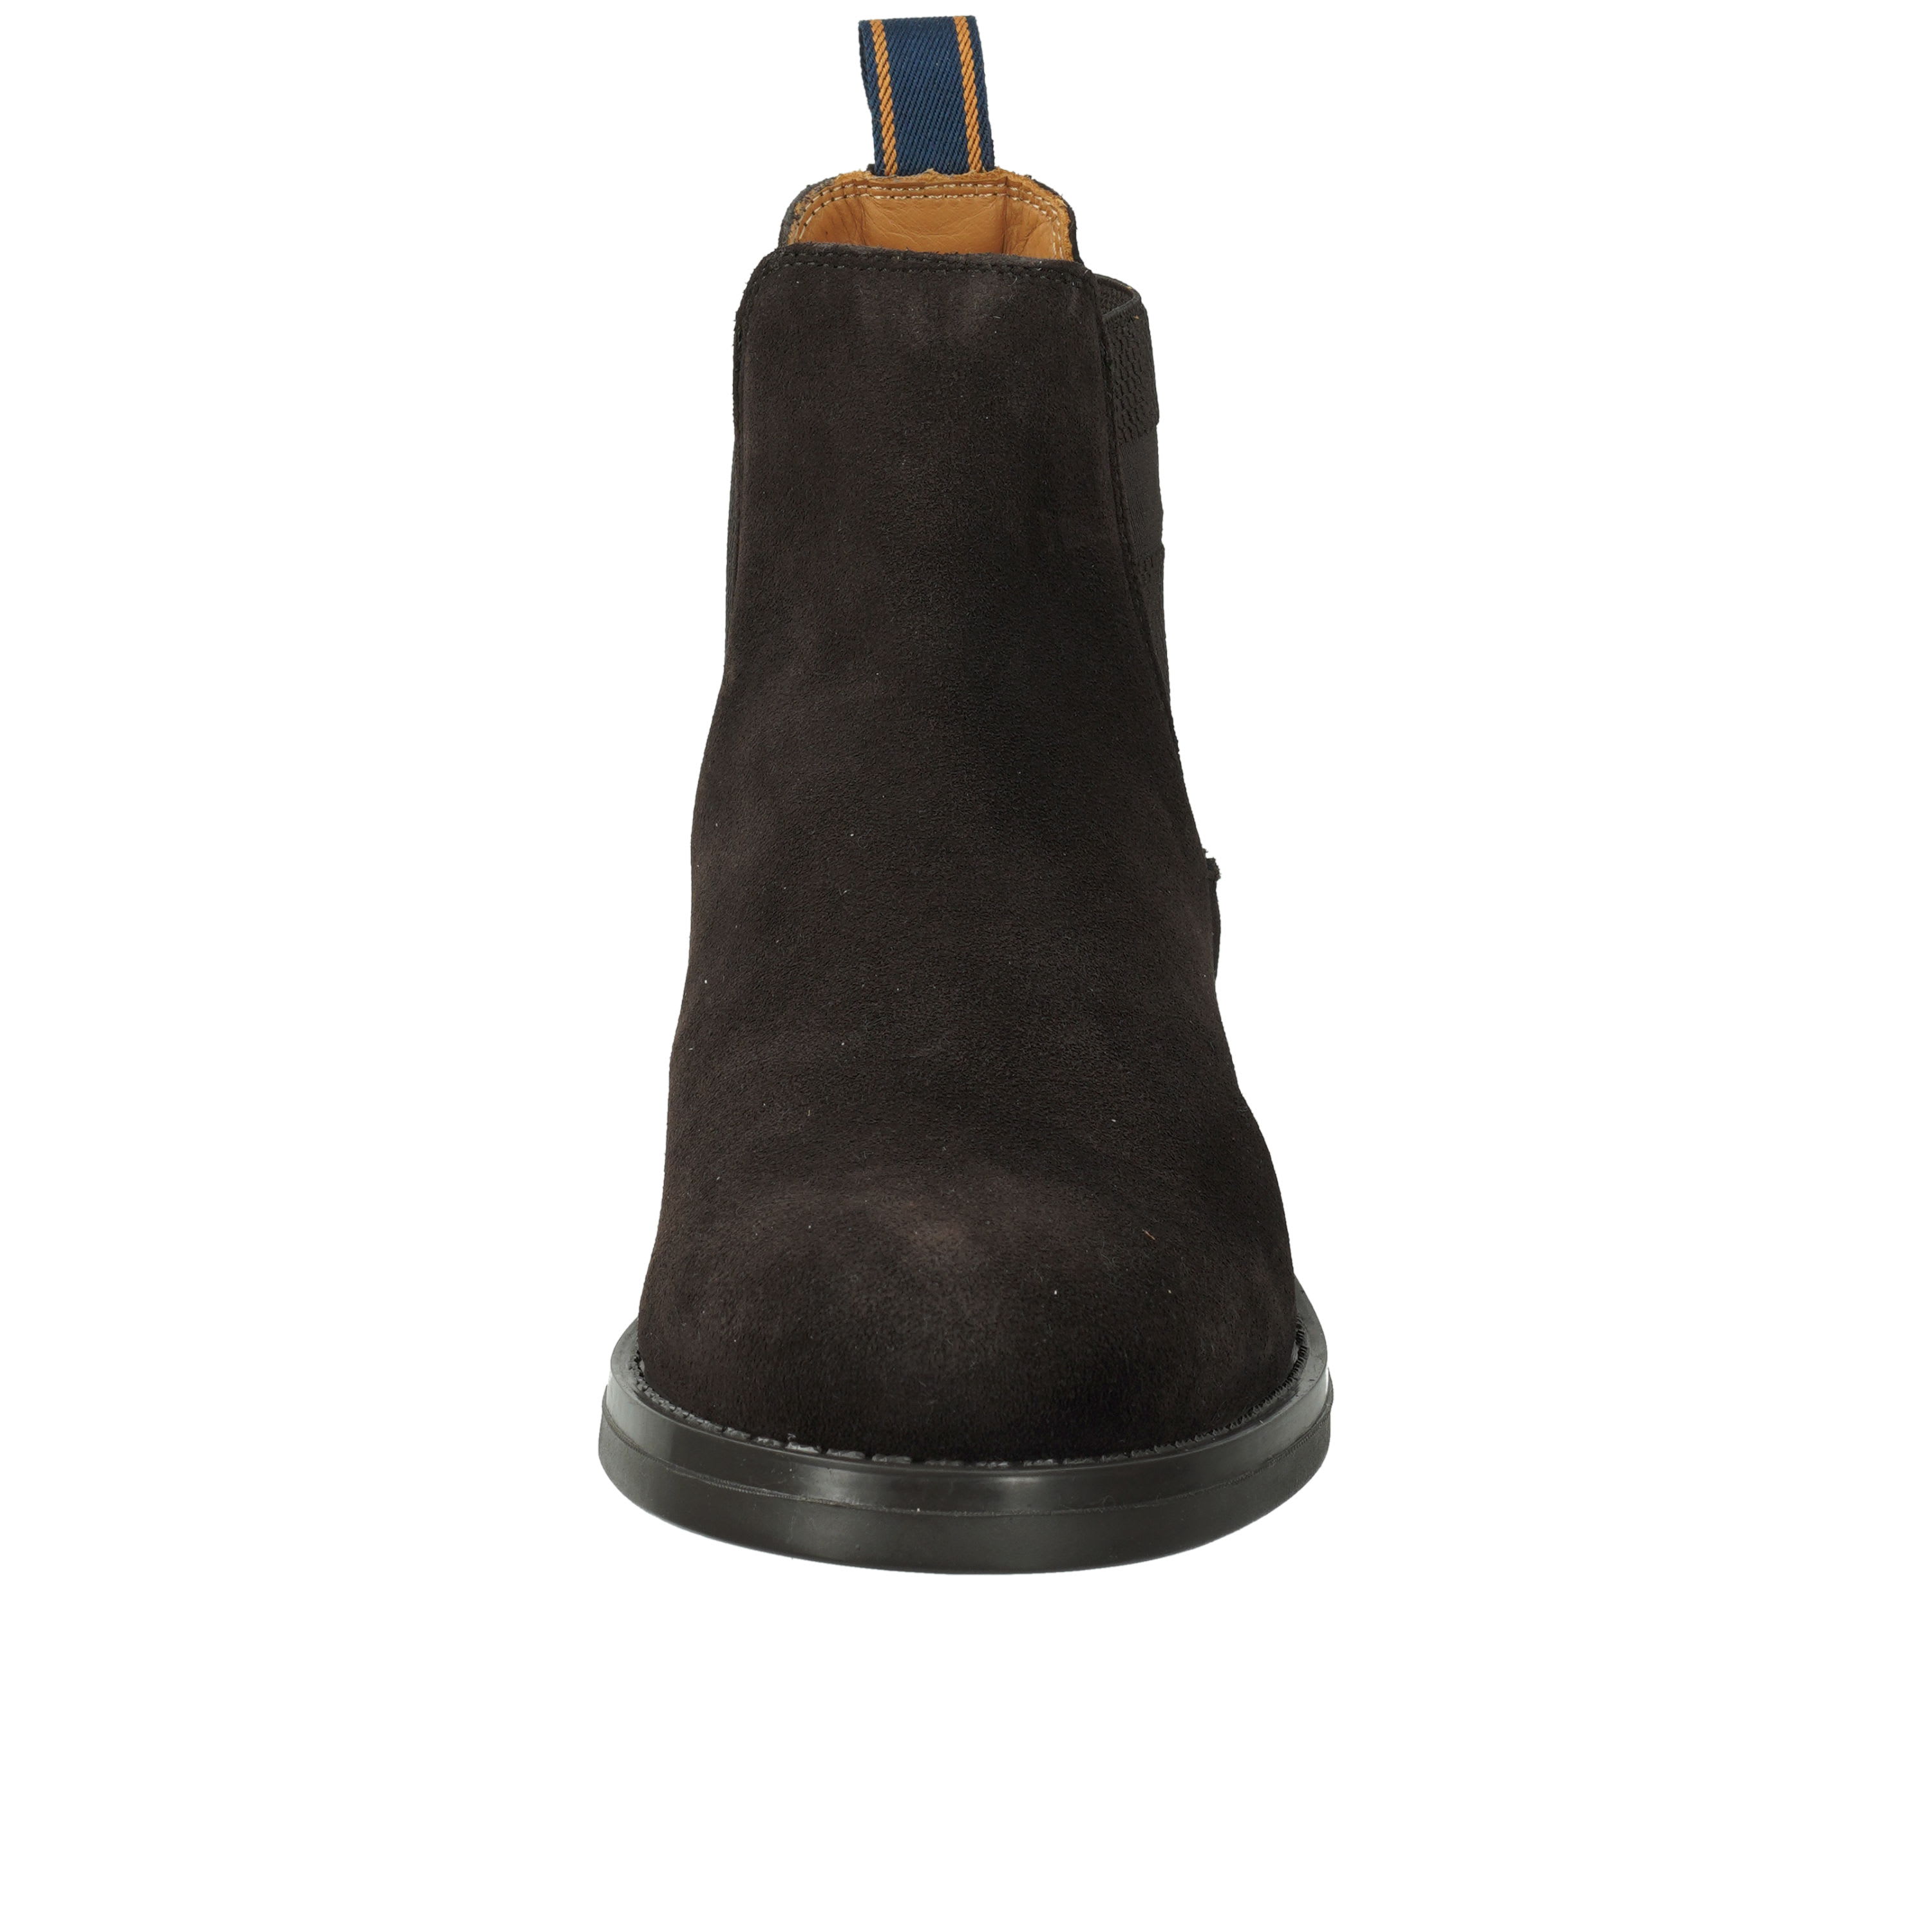 Brookly Chelsea Boot, g46 - dark brown